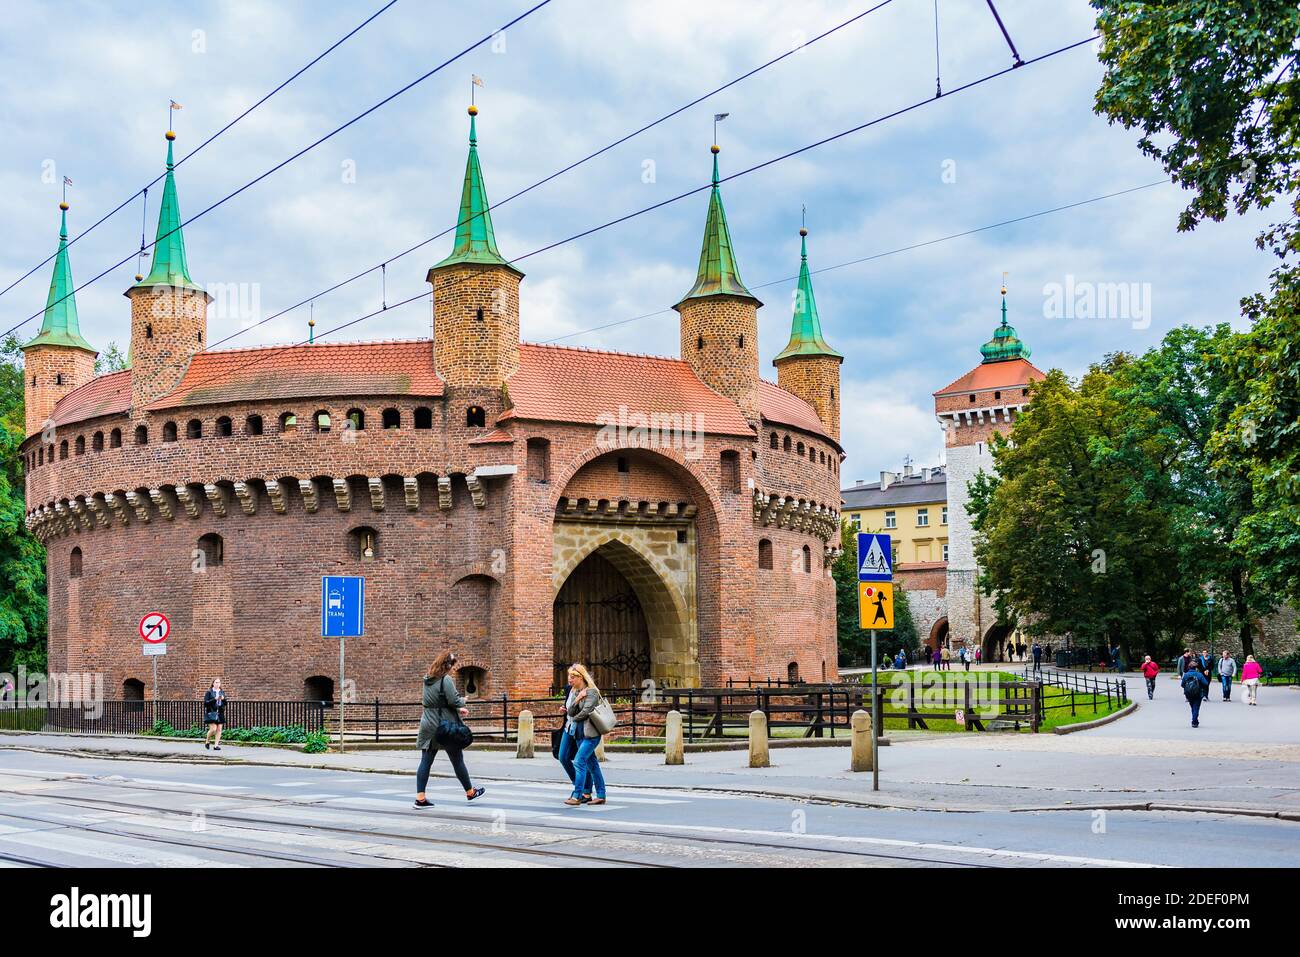 Der Kraków Barbican ist ein barbican – ein befestigter Vorposten, der einst mit der Stadtmauer verbunden war. Es ist ein historisches Tor, das in die Altstadt von Kraków führt Stockfoto